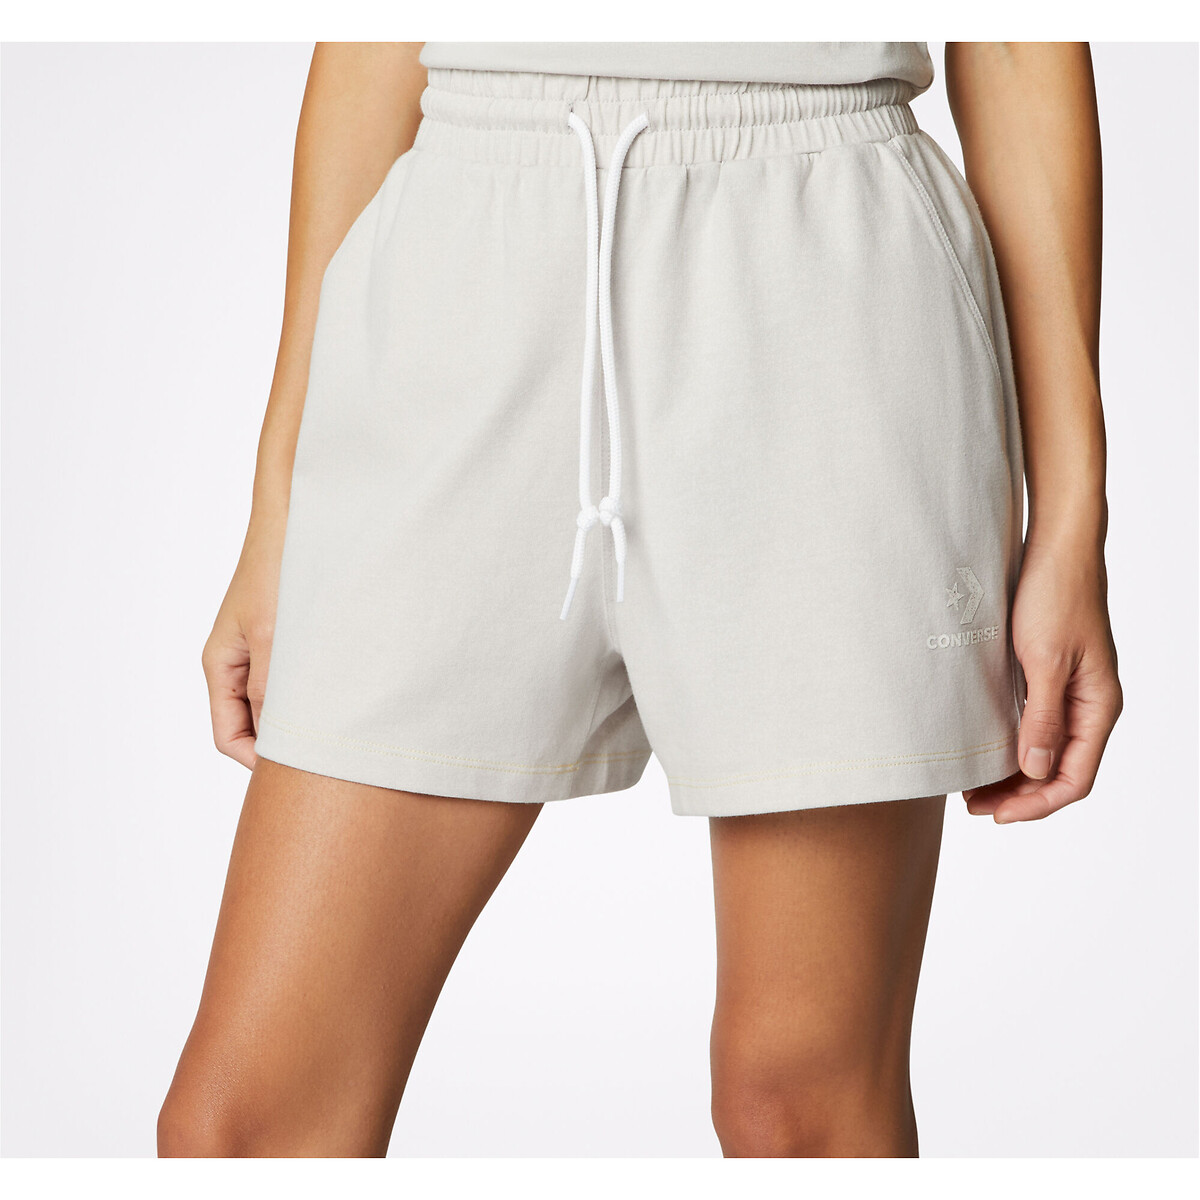 Aibrou Shorts Femme Sport Coton Bermudas Eté Pantalon Court avec Poches pour Fitness Jogging Gym Yoga Bas de Pyjama dintérieur Casual 